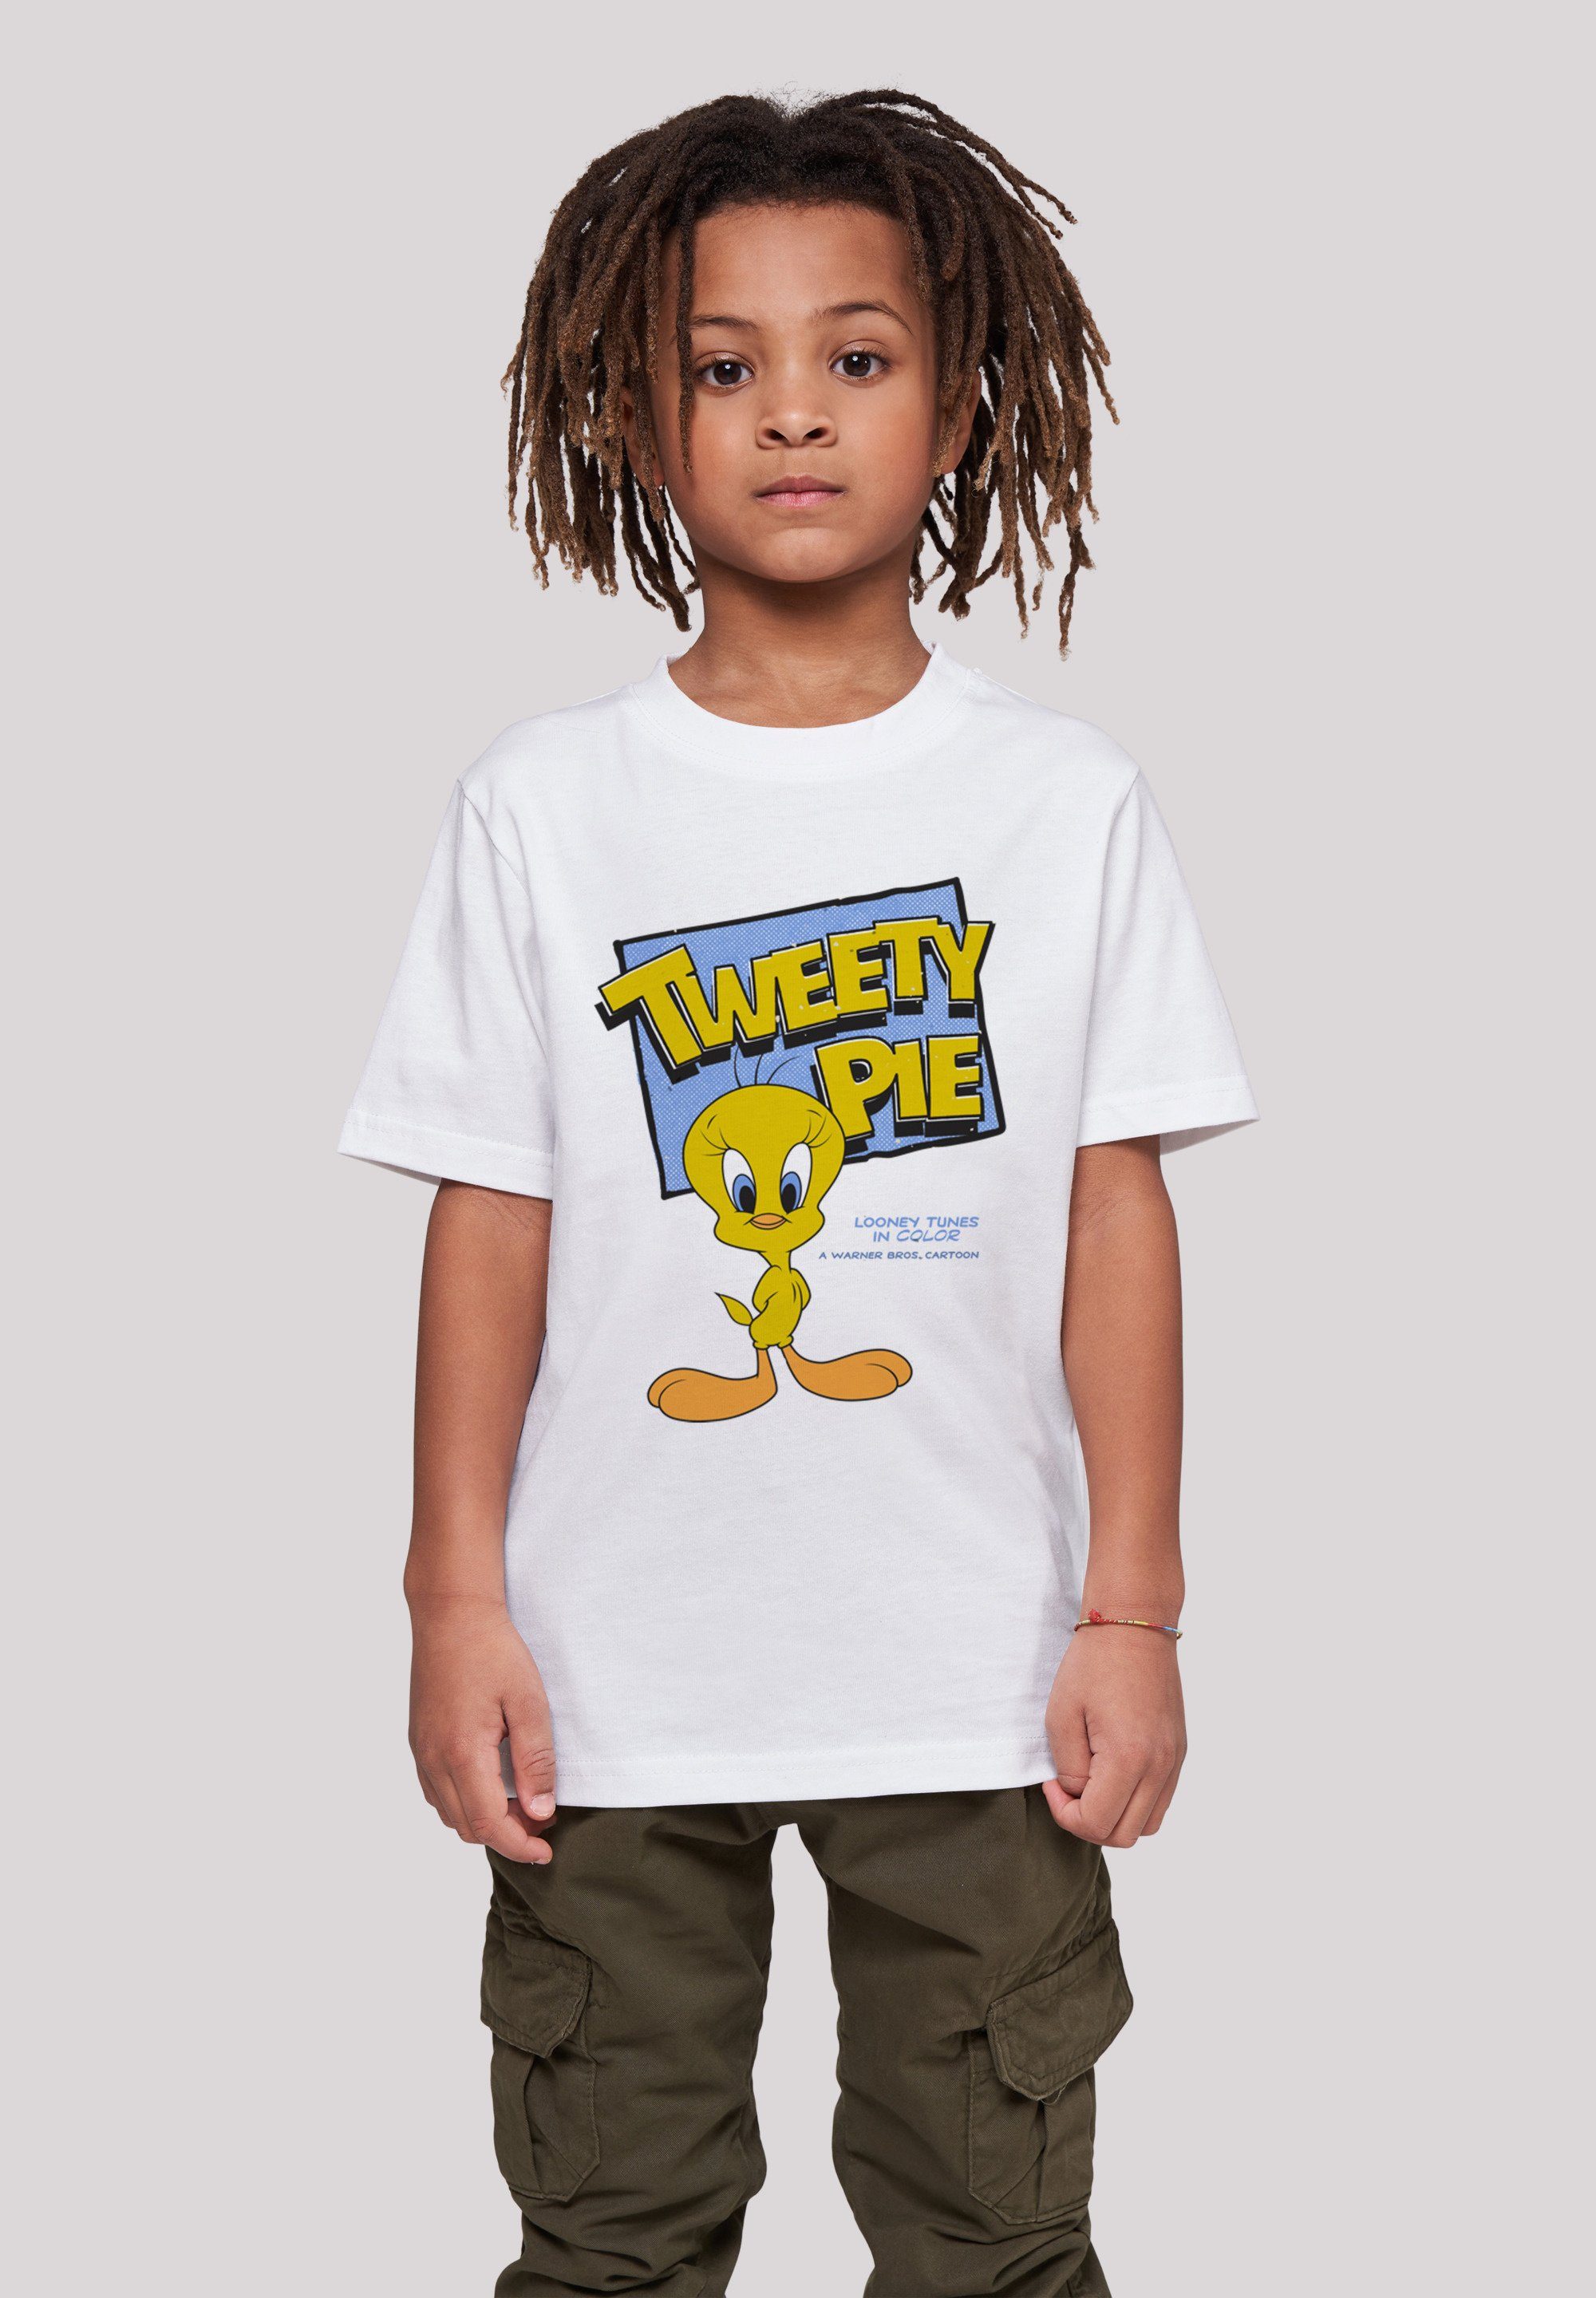 F4NT4STIC T-Shirt Looney Tunes Classic Tweety Pie Unisex Kinder,Premium Merch,Jungen,Mädchen,Bedruckt weiß